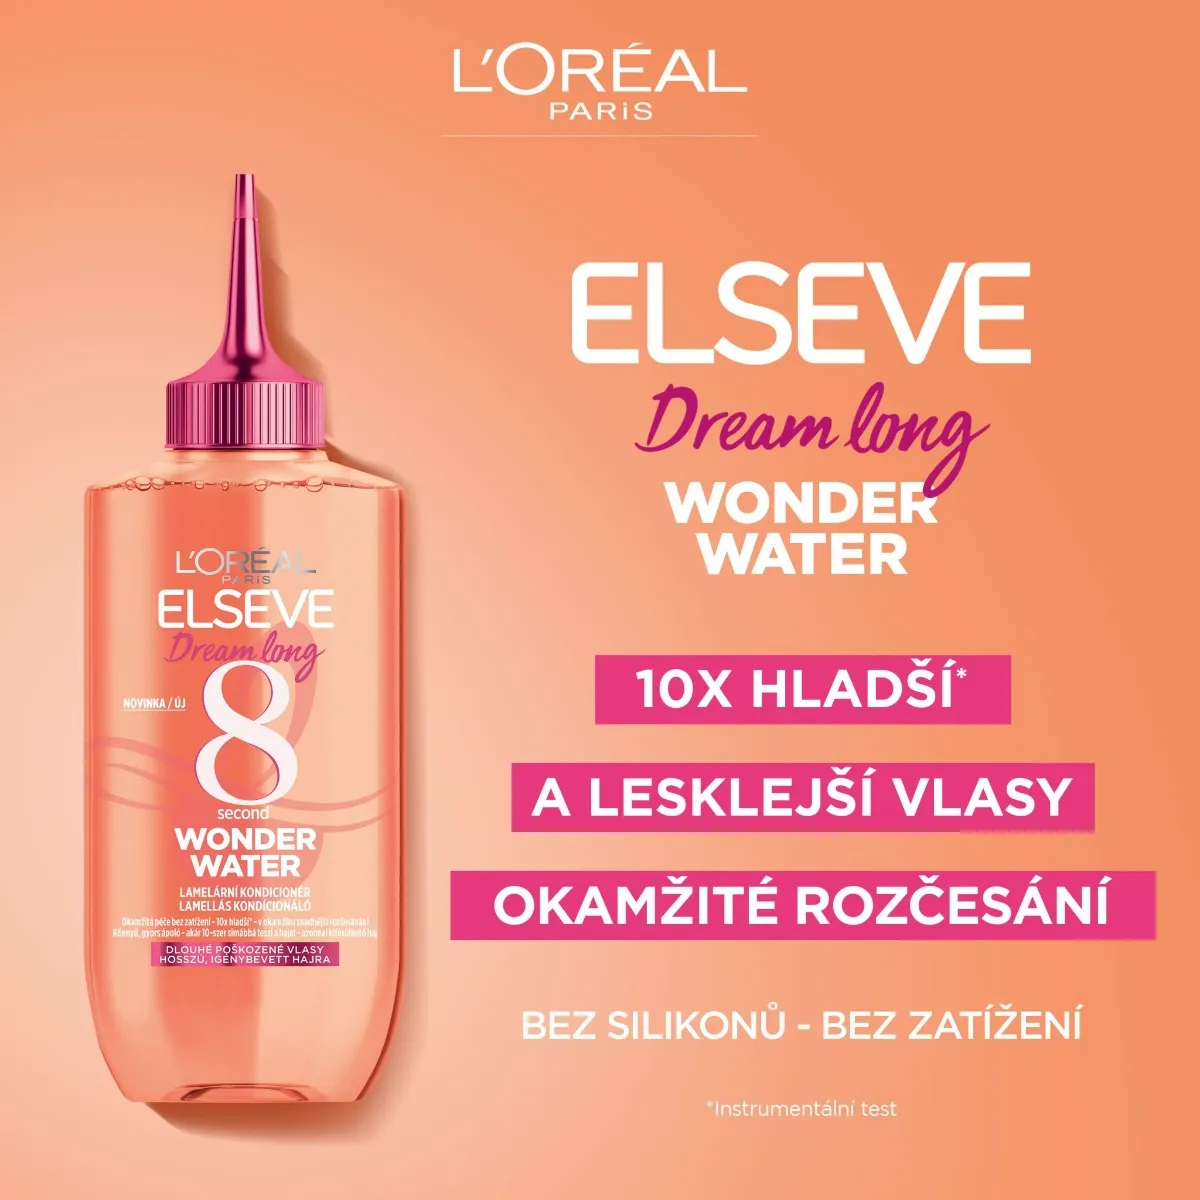 Loréal Paris Elseve Dream Long 8 Second Wonder Water lamelární kondicionér 200 ml